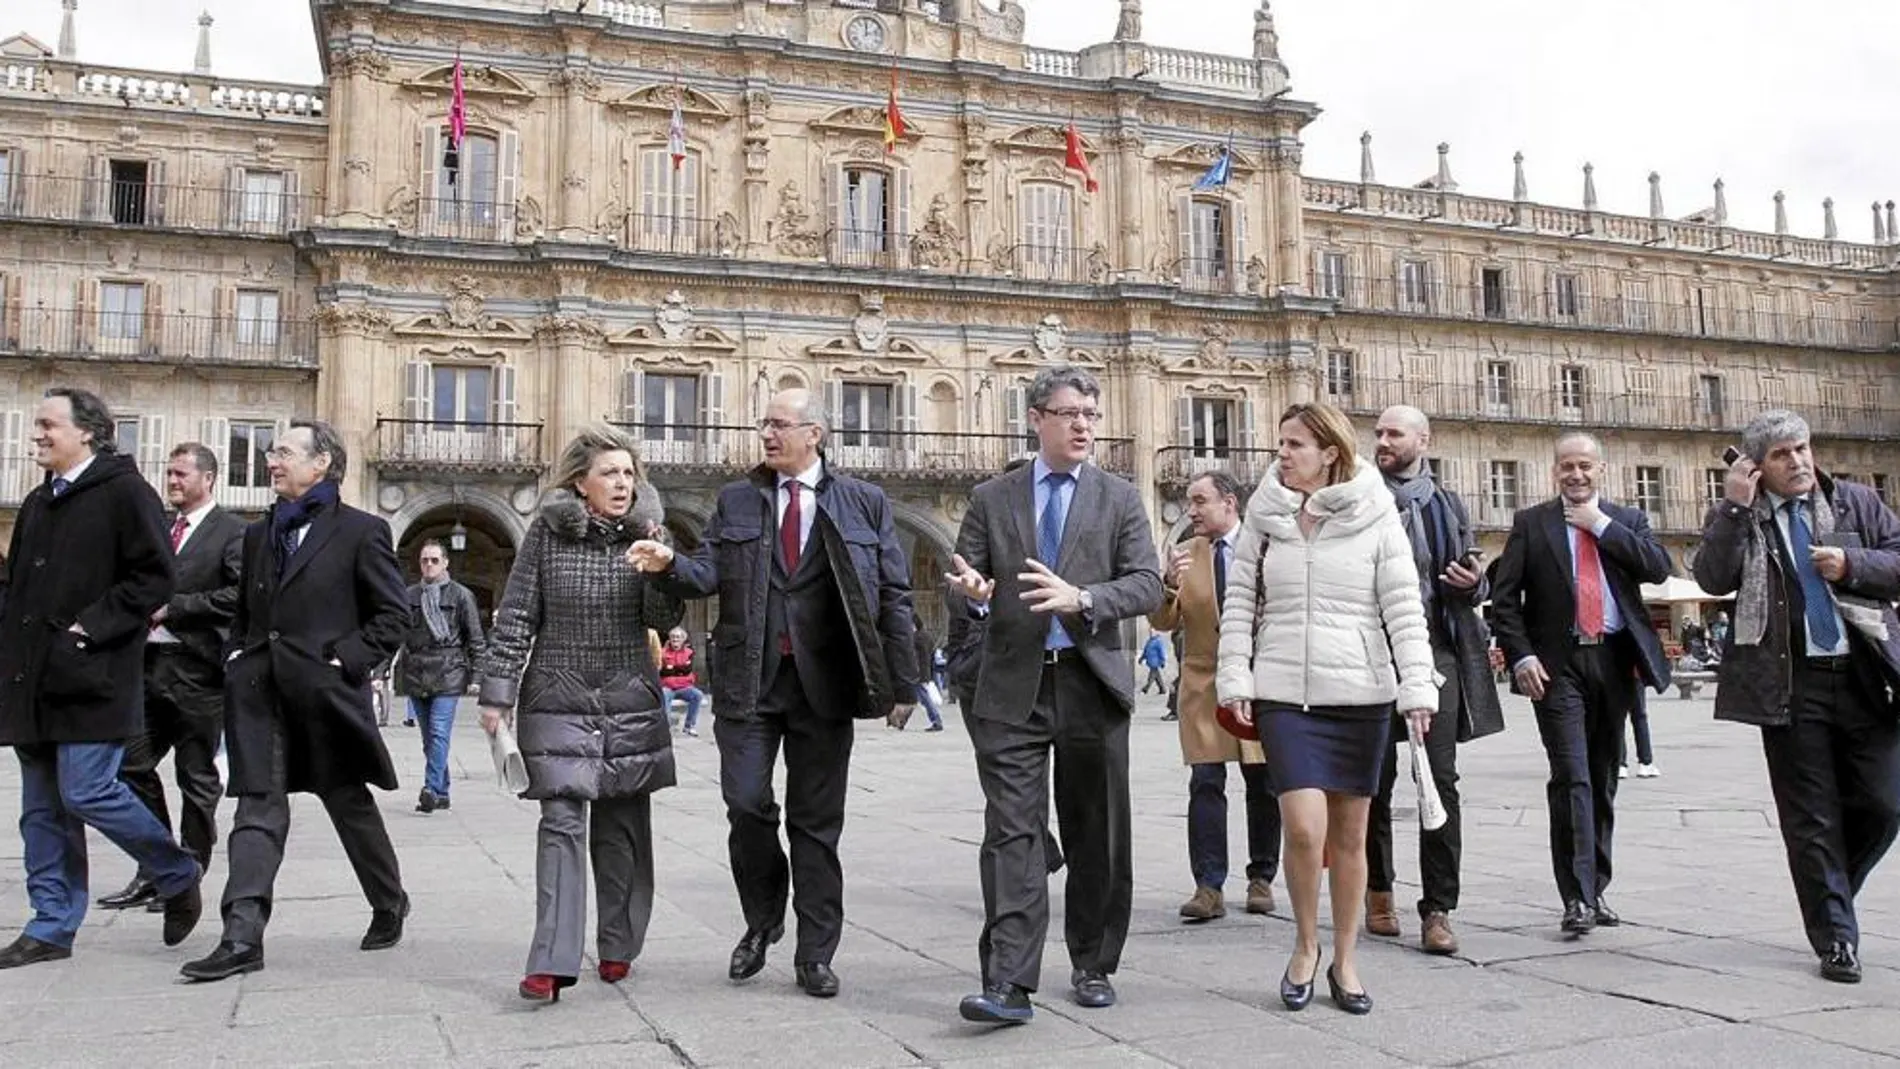 El ministro de Energía, Turismo, Álvaro Nadal, visita Salamanca junto a la delegada del Gobierno, María José Salgueiro, y el pesidente de la Diputación provincial, Francisco Javier Iglesias, entre otros.